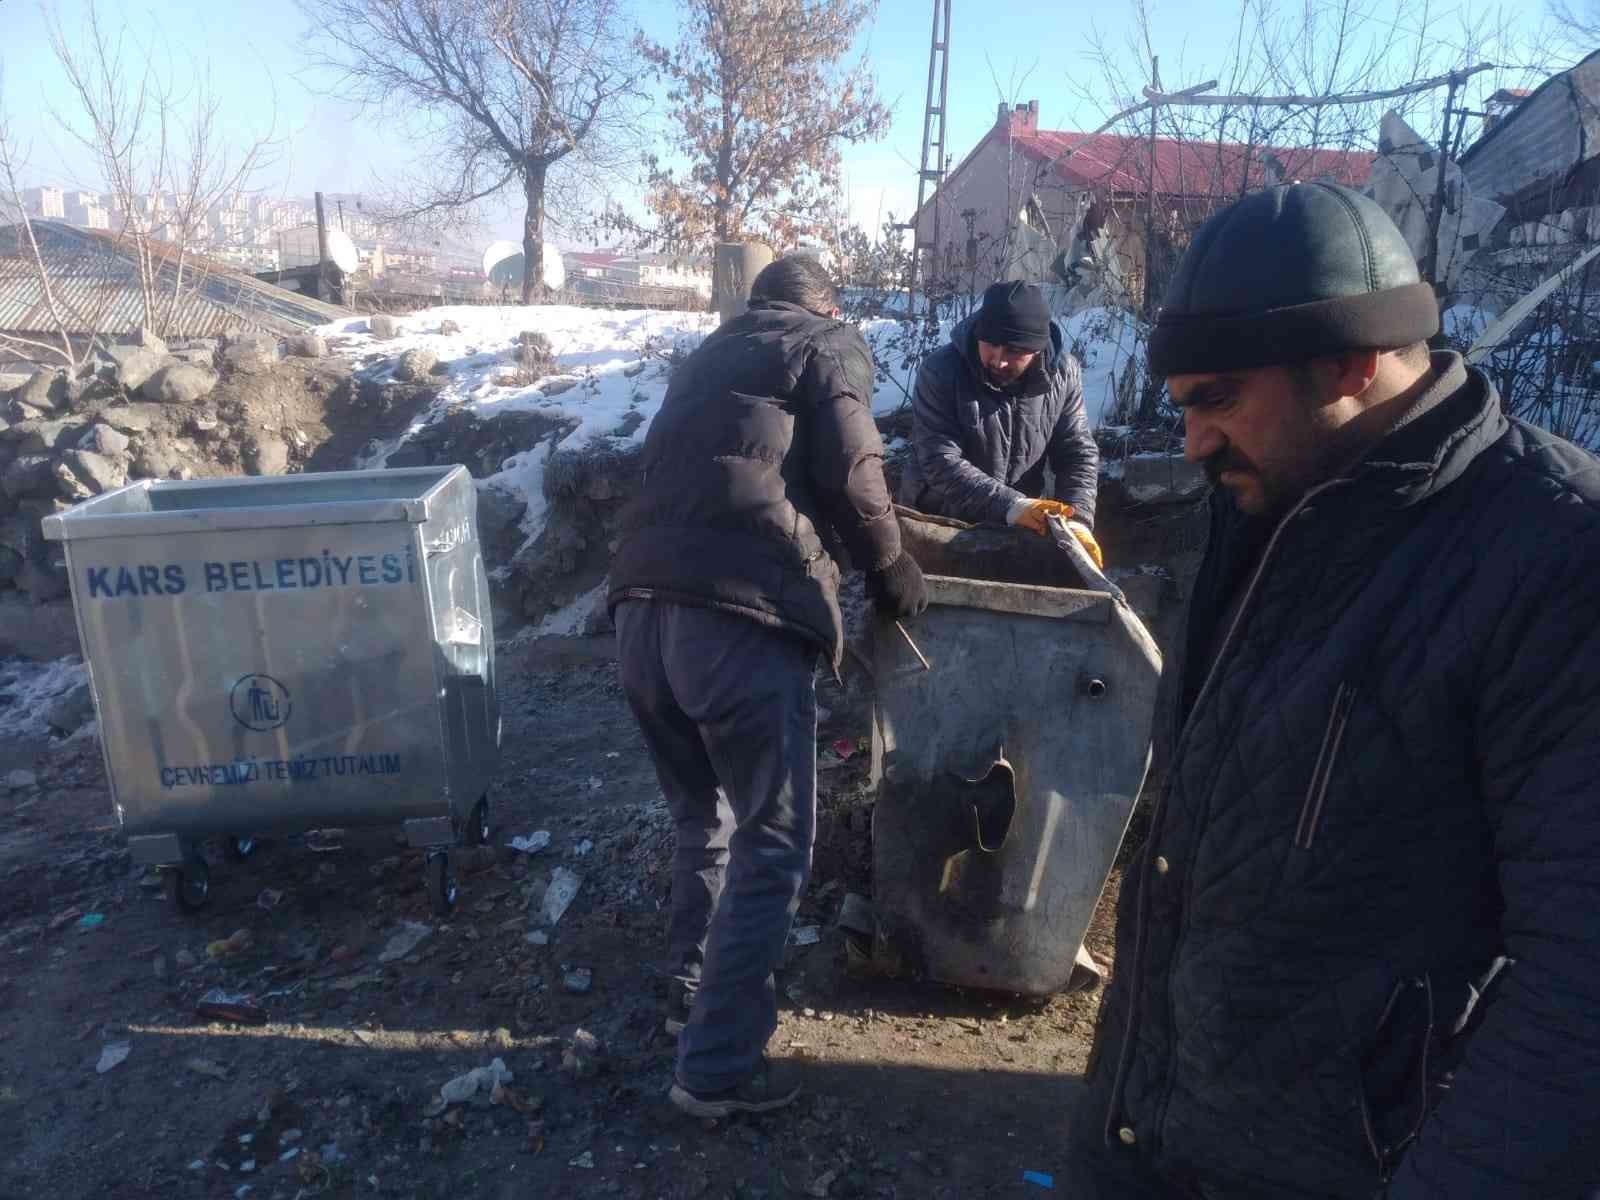 Kars’ta belediye çöp konteynırlarını yeniliyor #kars